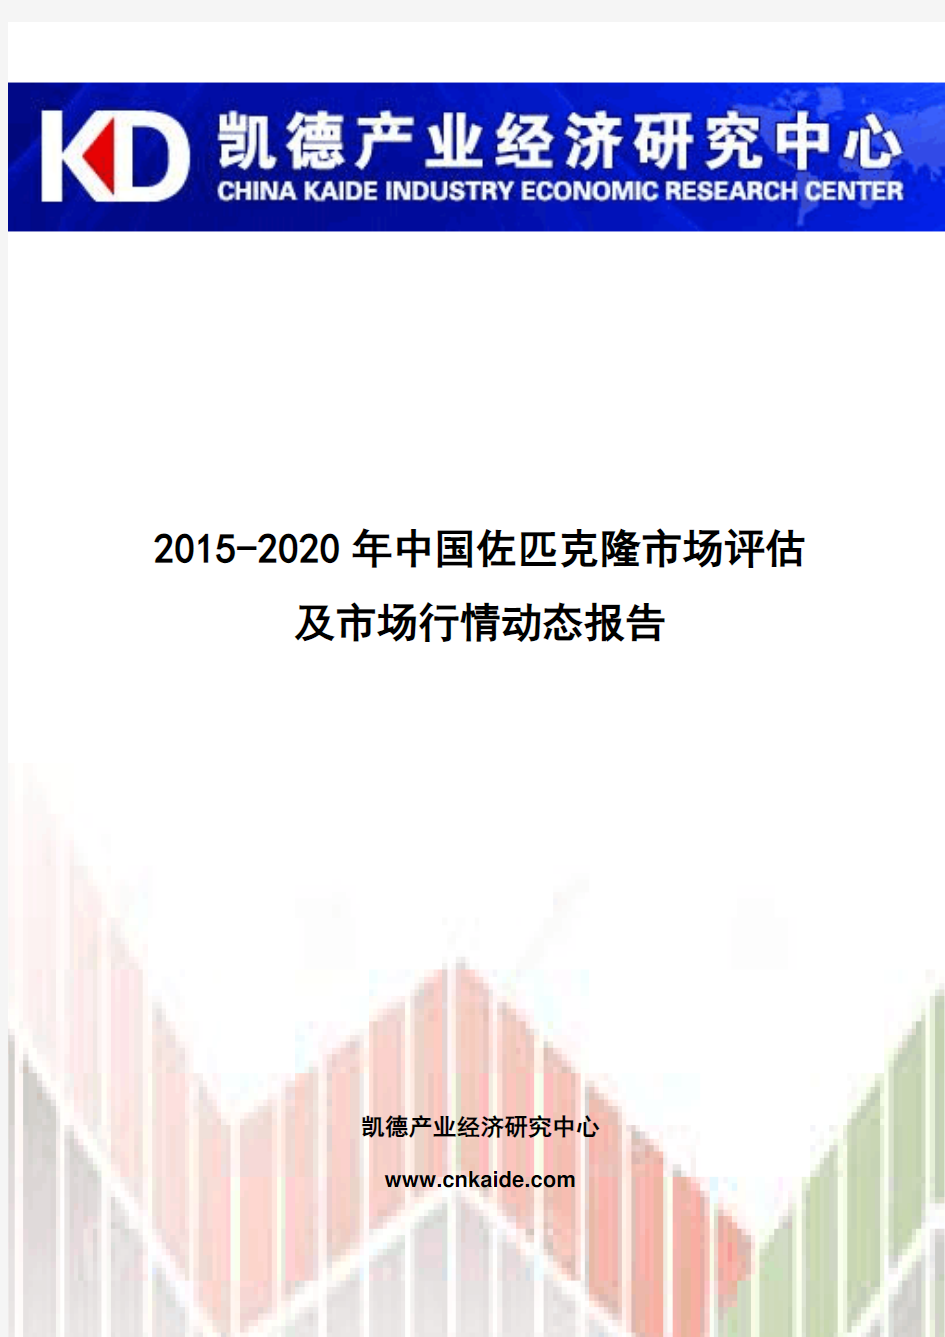 2015-2020年中国佐匹克隆市场评估及市场行情动态报告